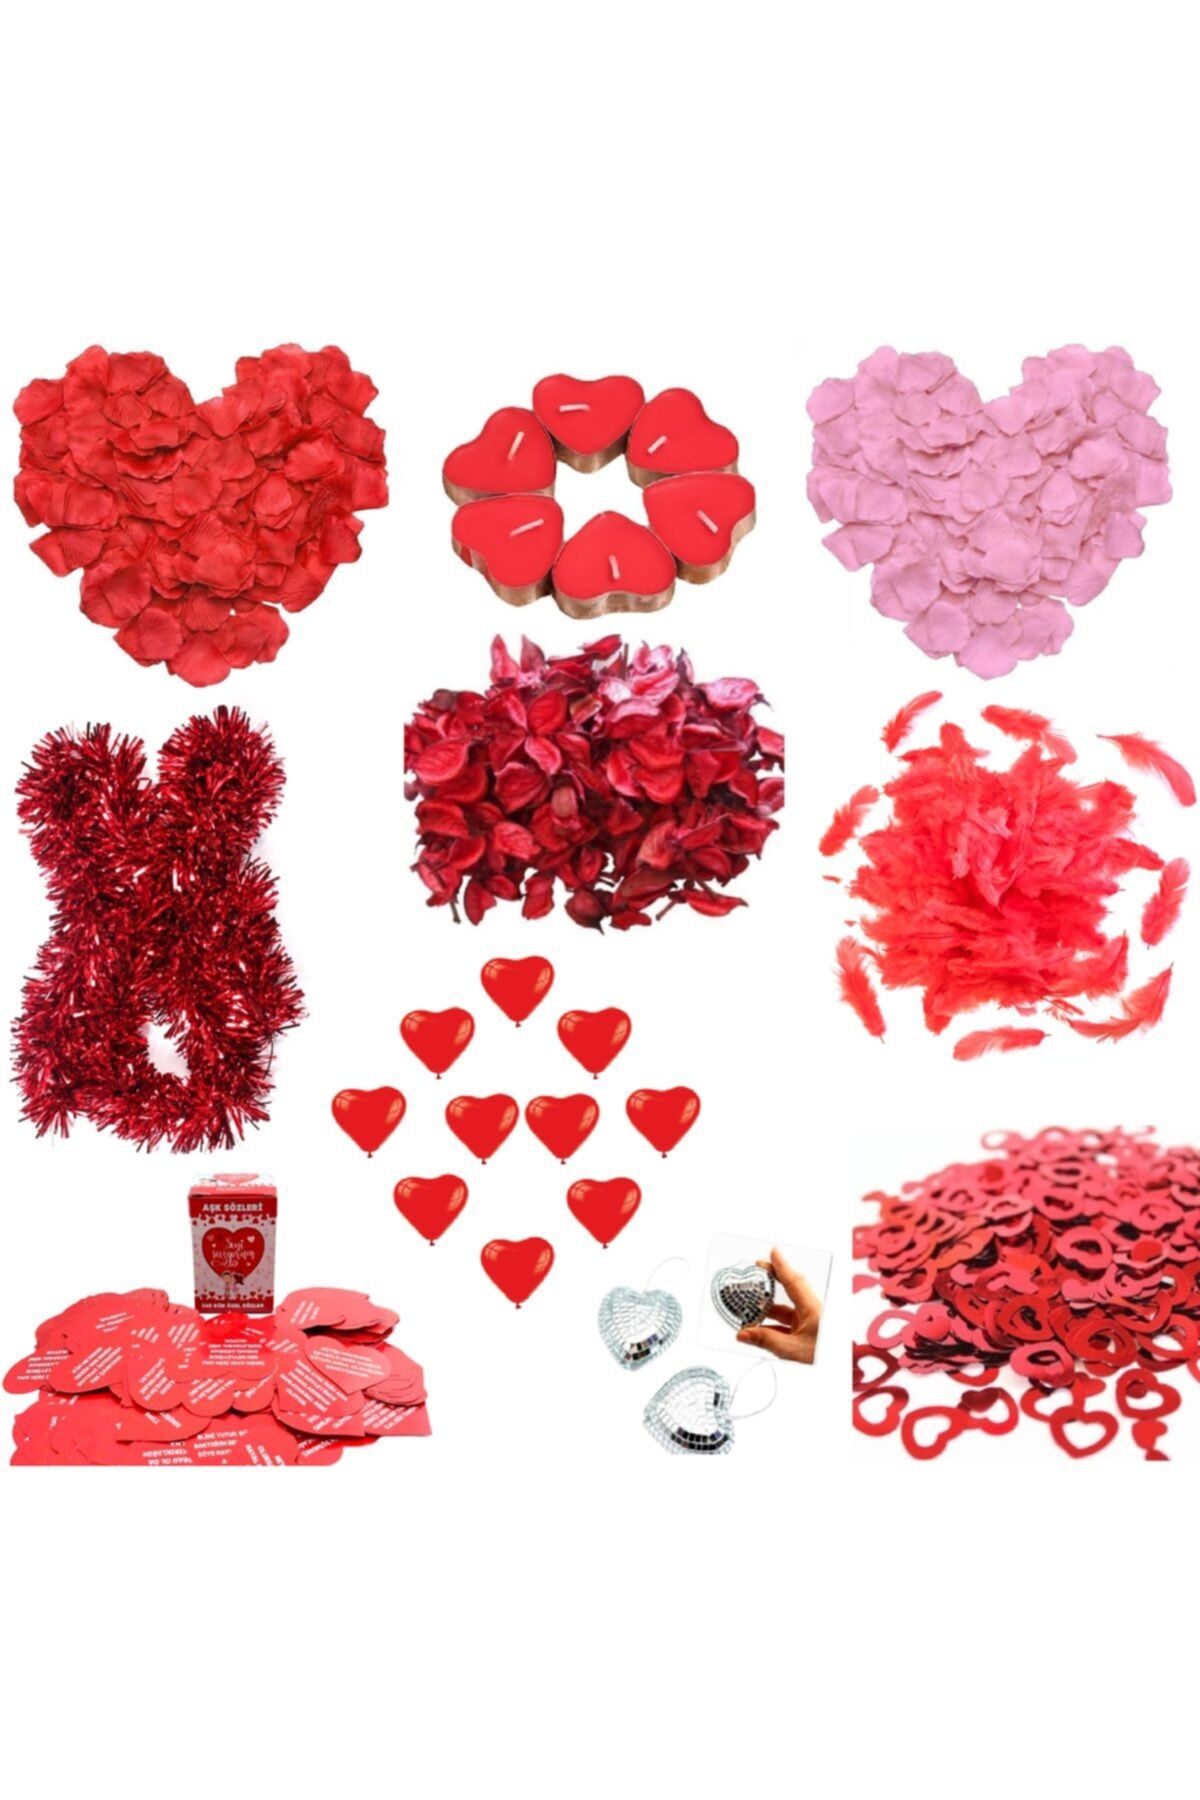 Happyland Sevgililer Günü - Evlilik Teklifi - Romantik Ortam Hazırlama Aşk Paketi Zemin-3 Modeli